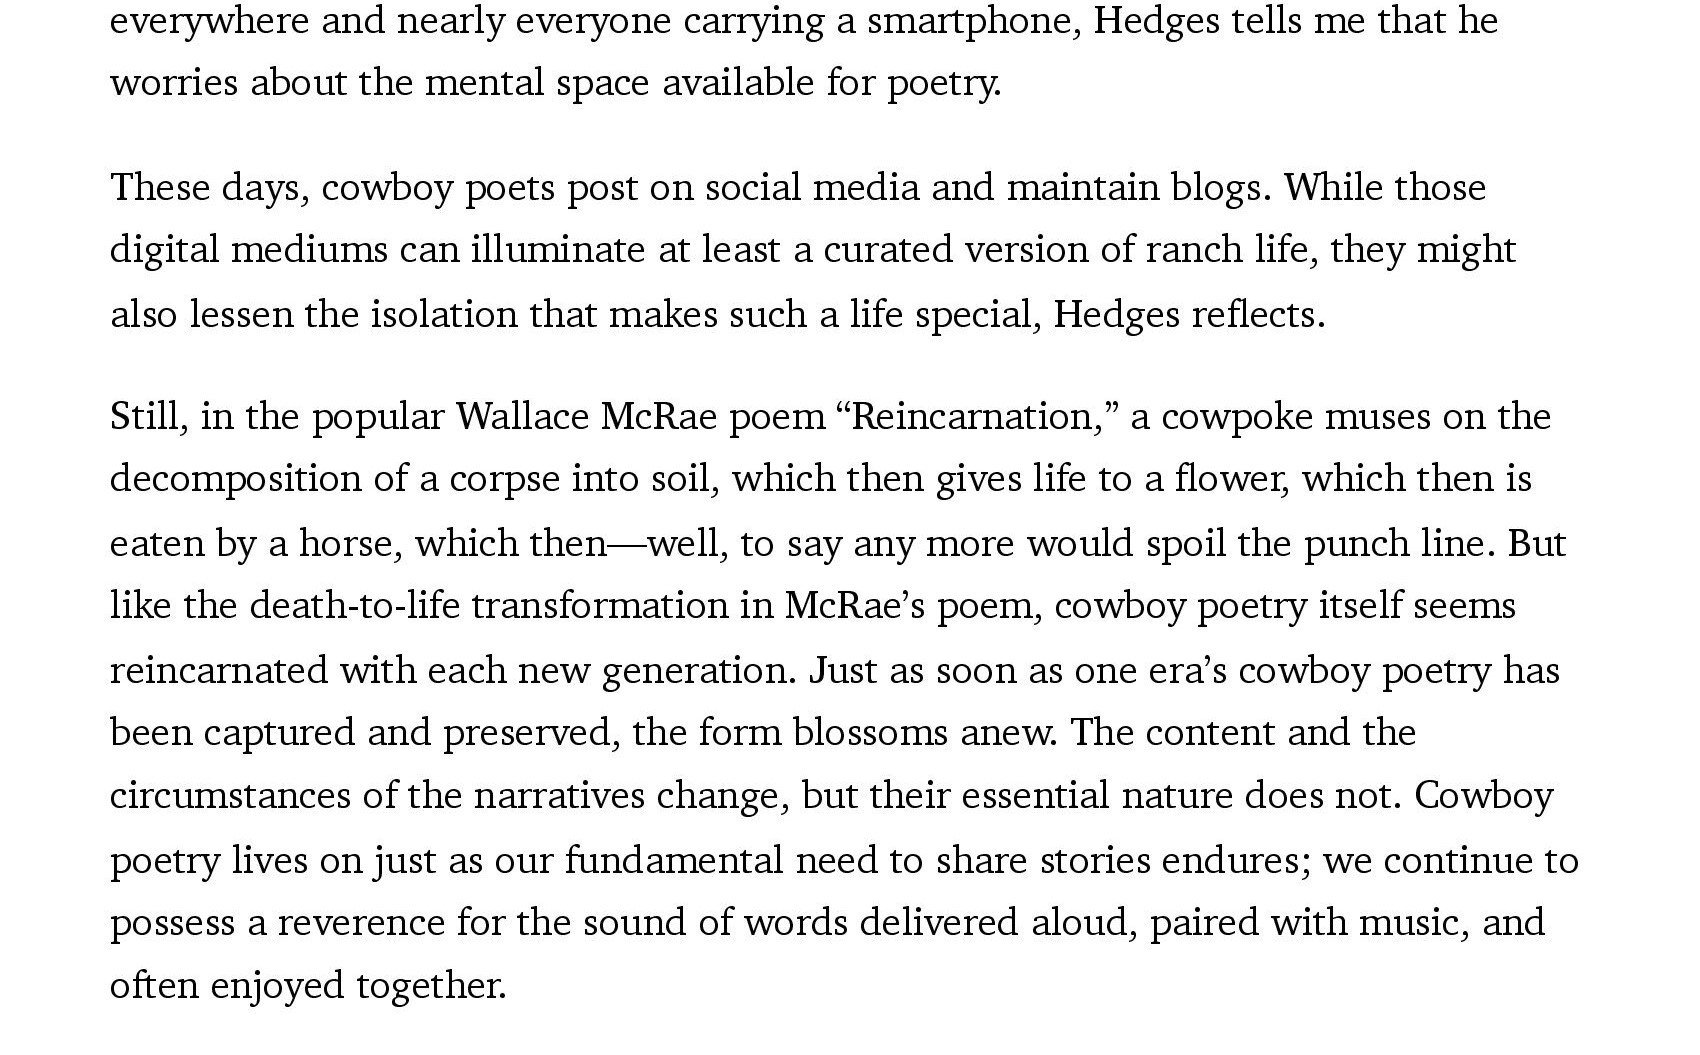 Cowboy Poets of the New West Alternate_00025.jpg